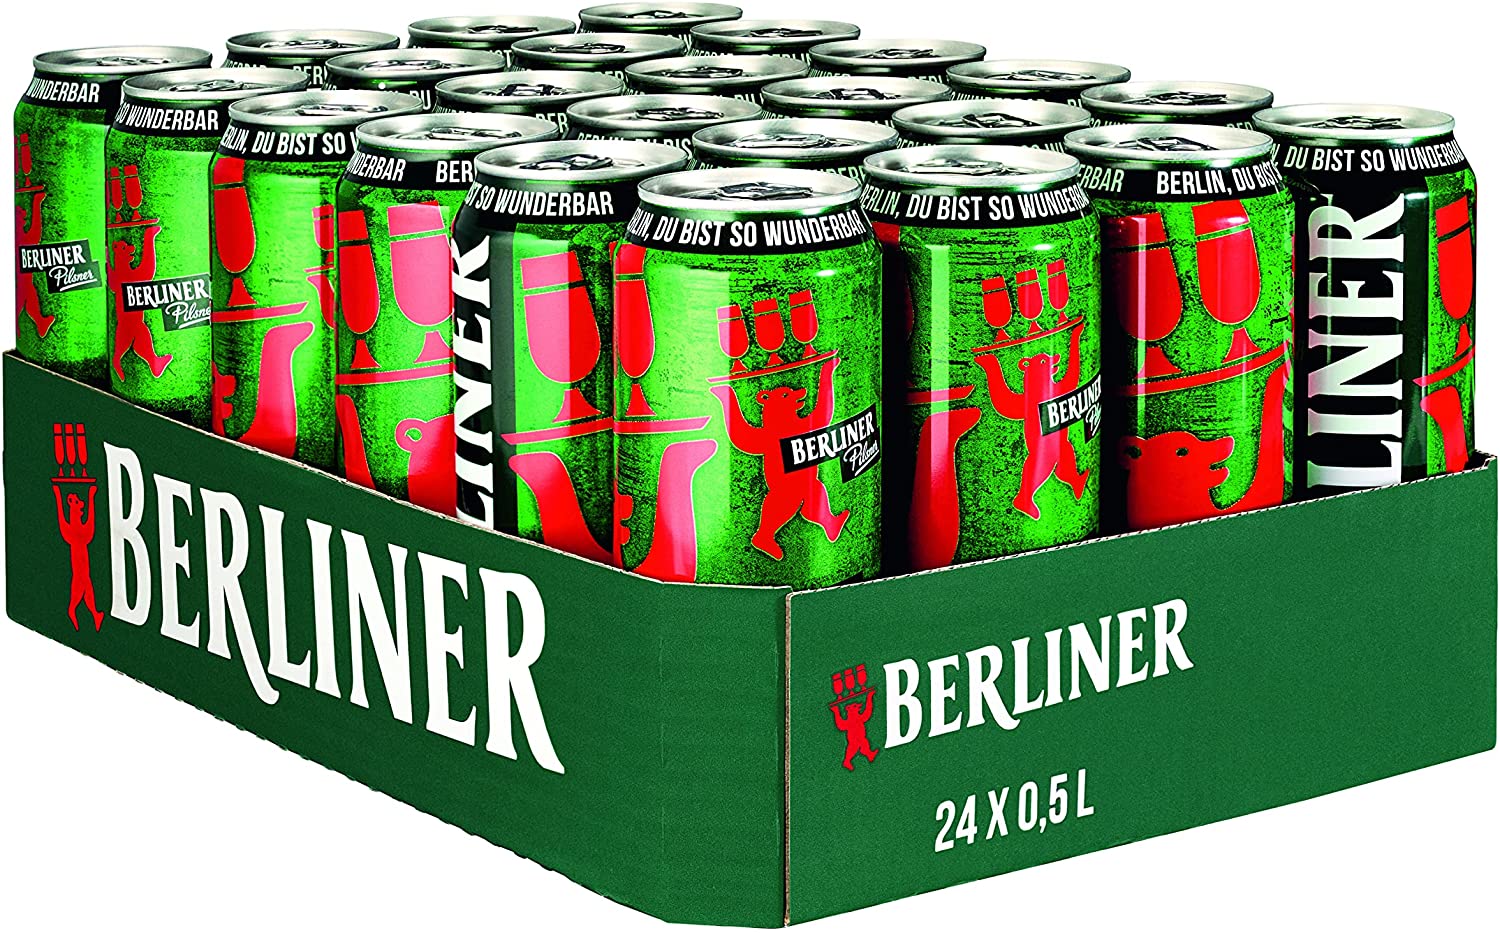 Berliner Pilsner 0,5l in der Dose mit 5% Vol.